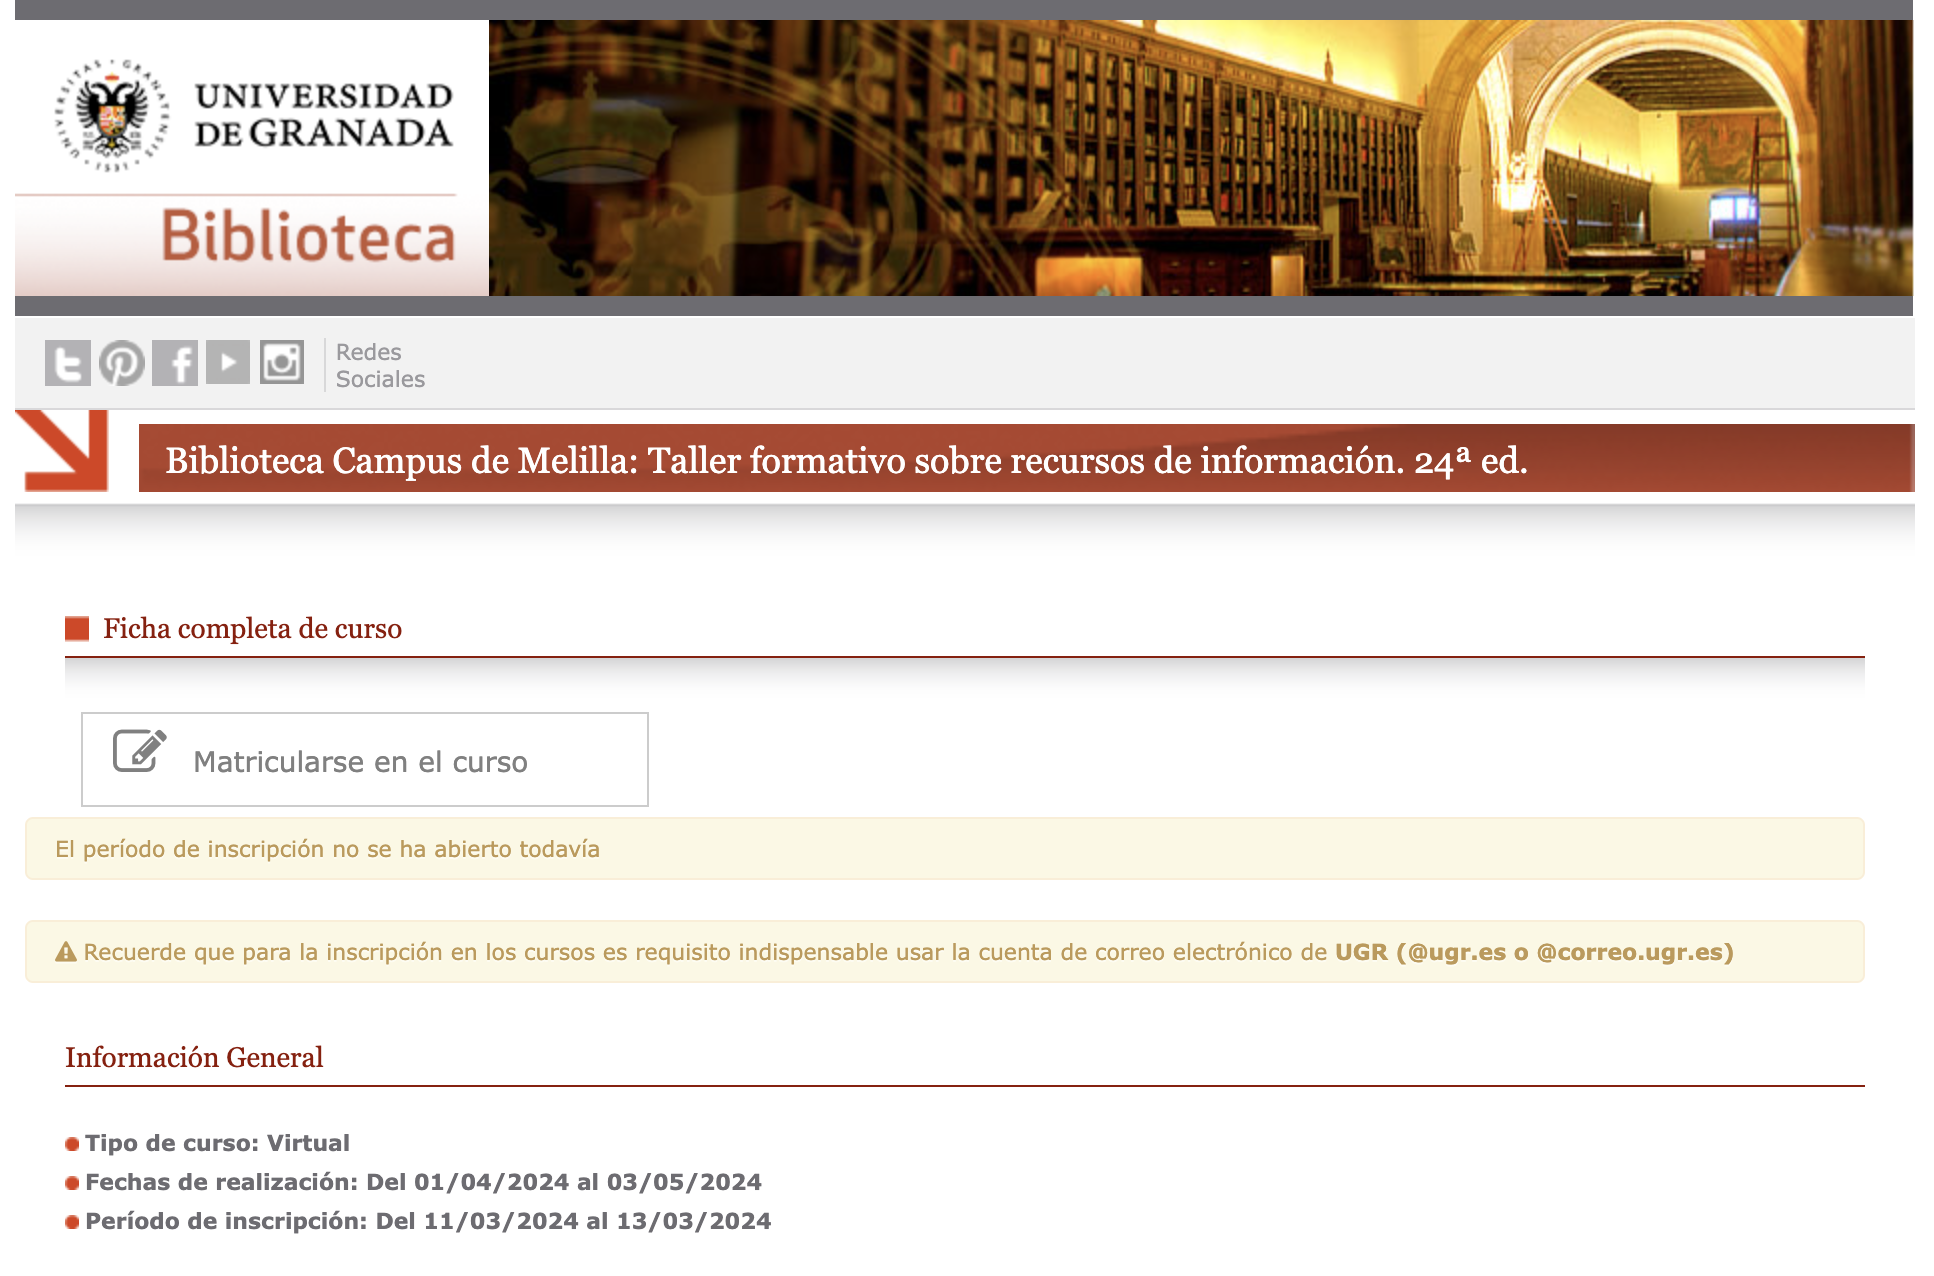 Taller Formativo sobre Recursos de Información para los grados en el Campus de Melilla con créditos